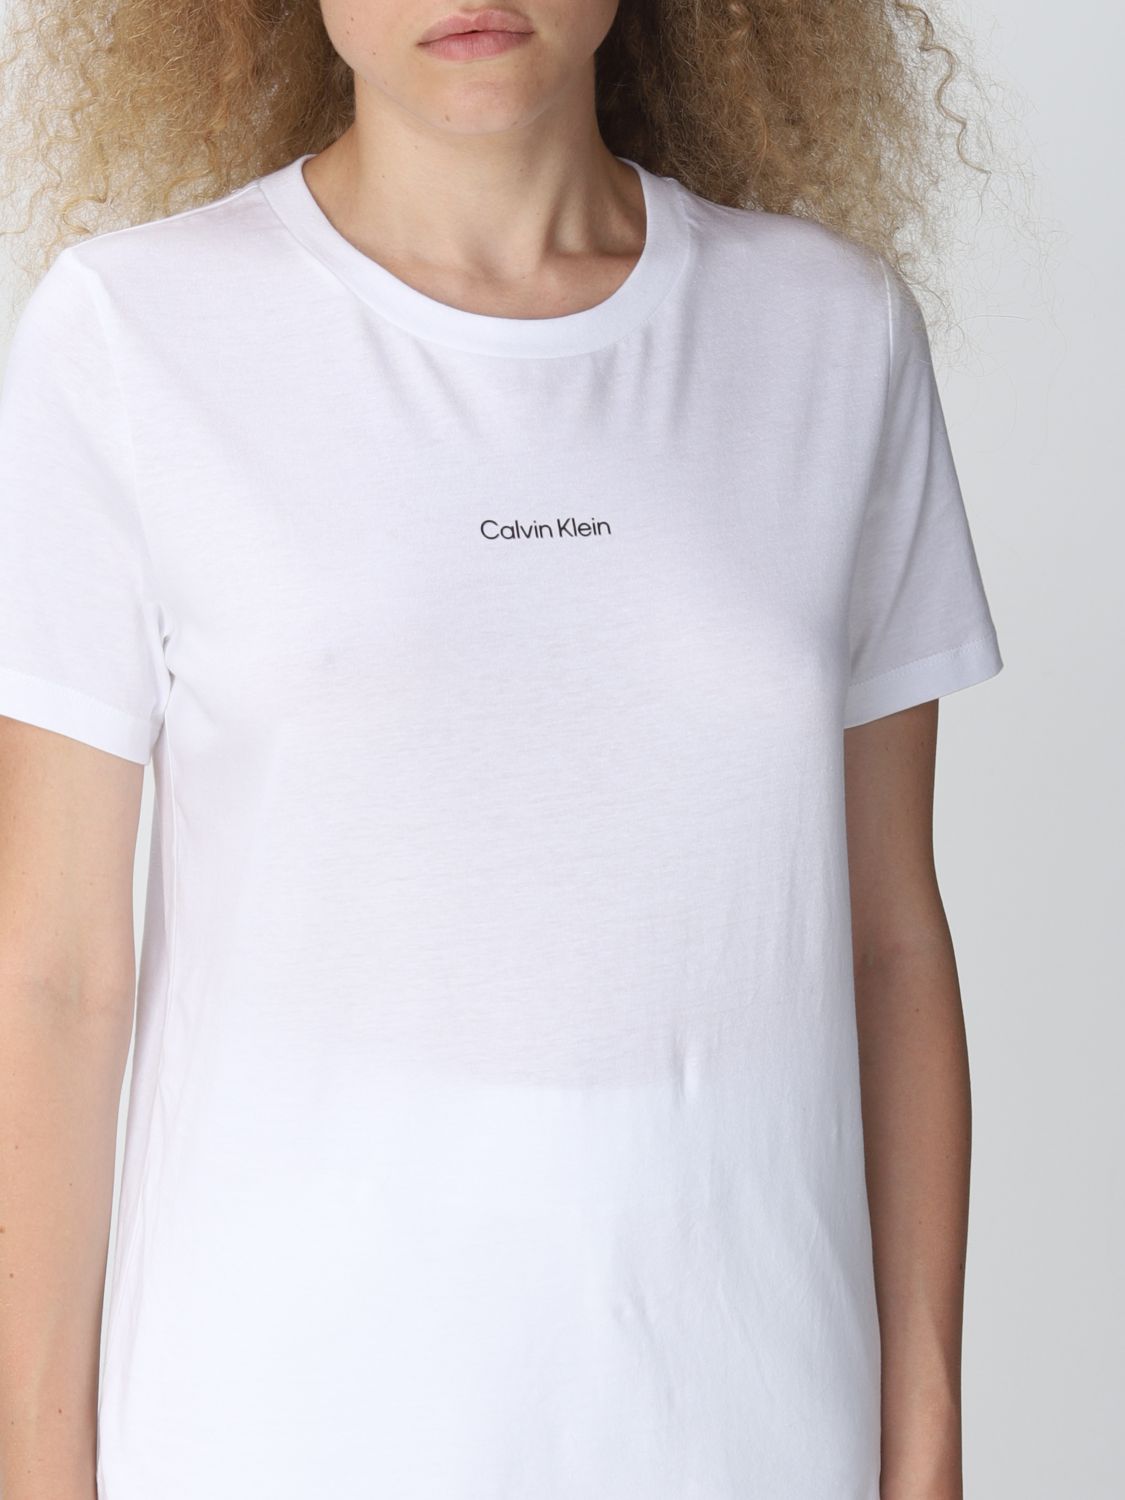 CALVIN KLEIN: t-shirt woman - White | Calvin Klein t-shirt K20K203677 online on GIGLIO.COM